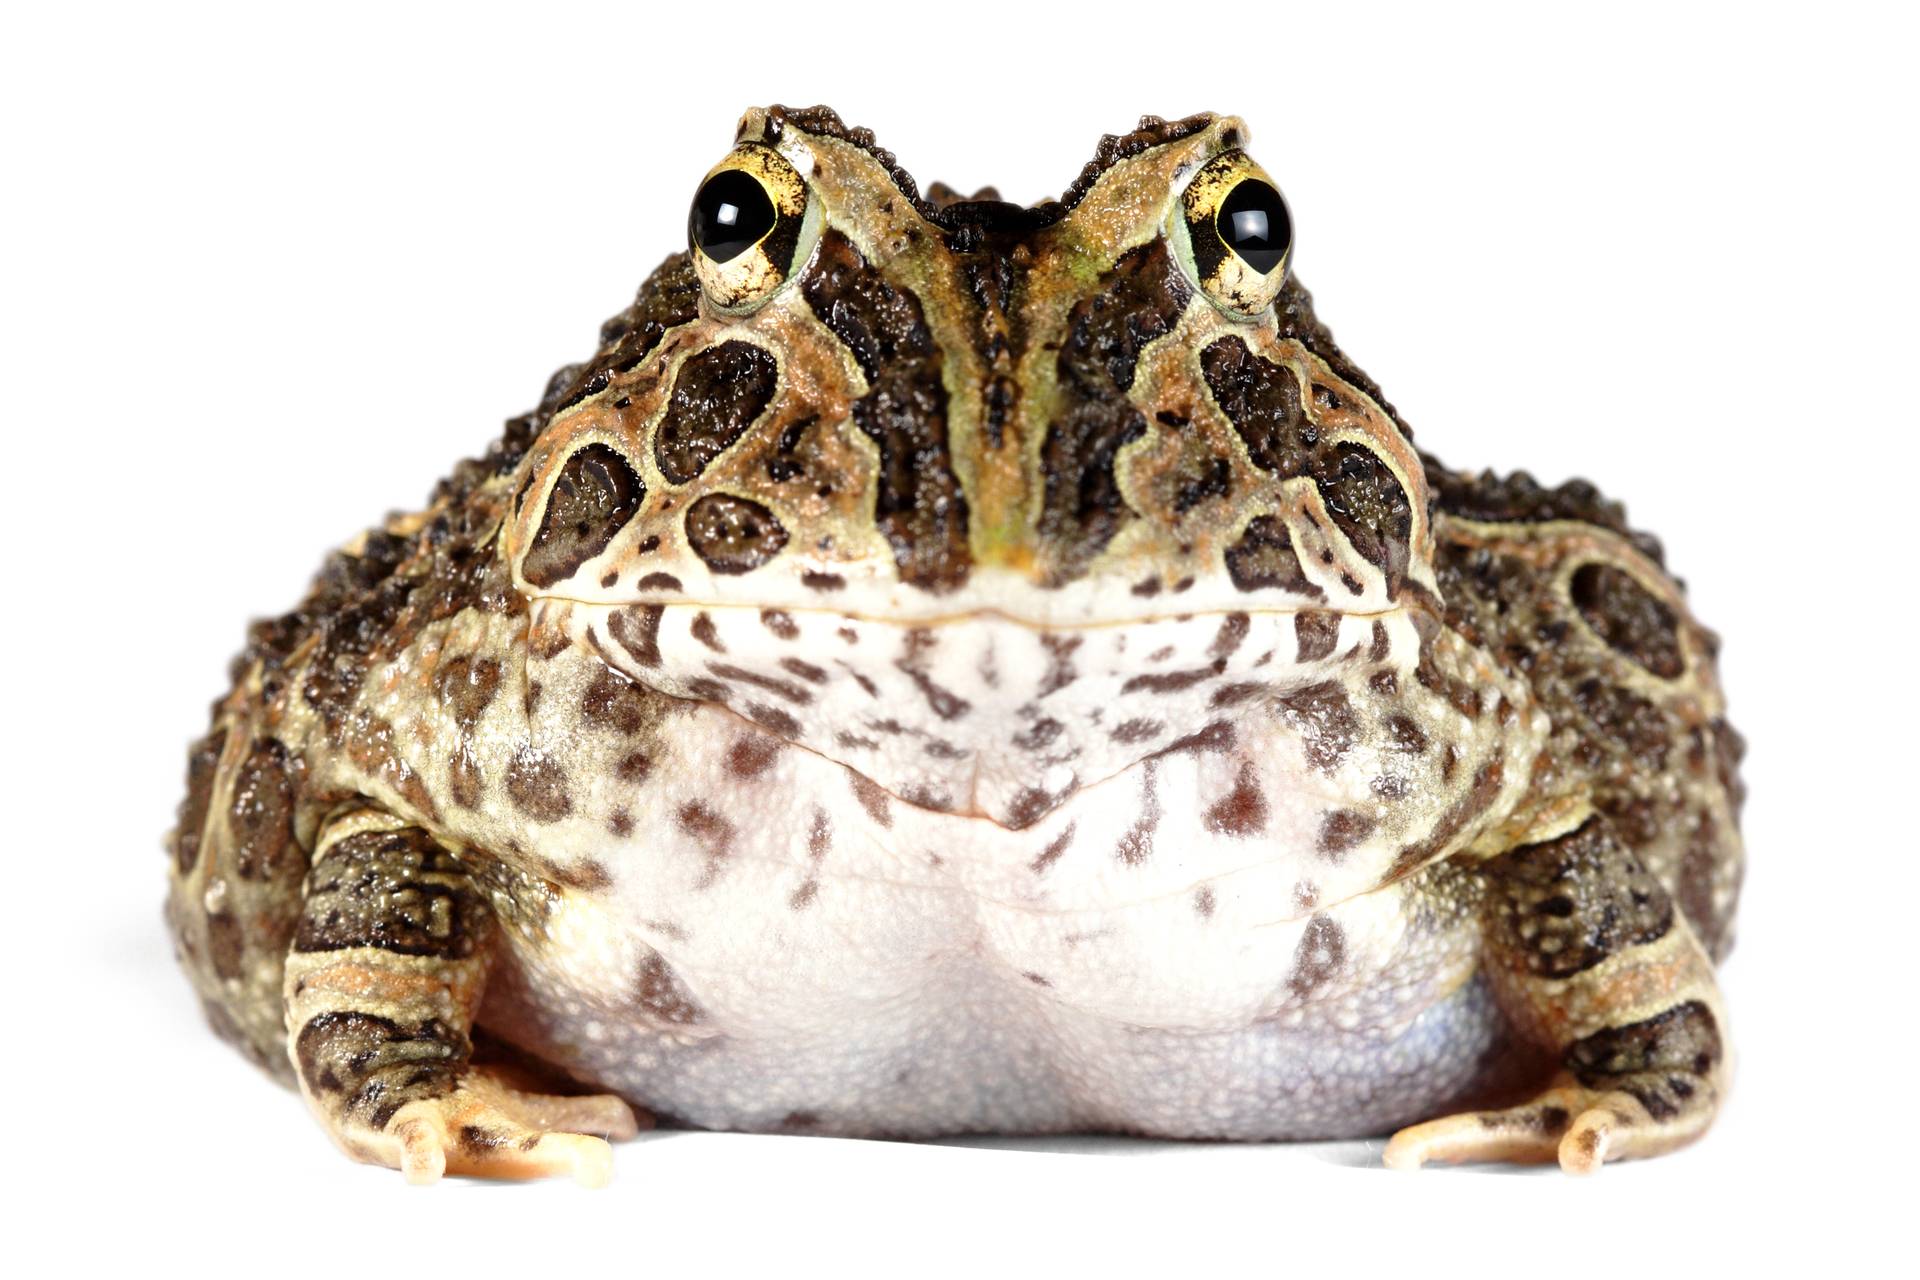 ᐉсодержание лягушек и жаб в домашних условиях. статья